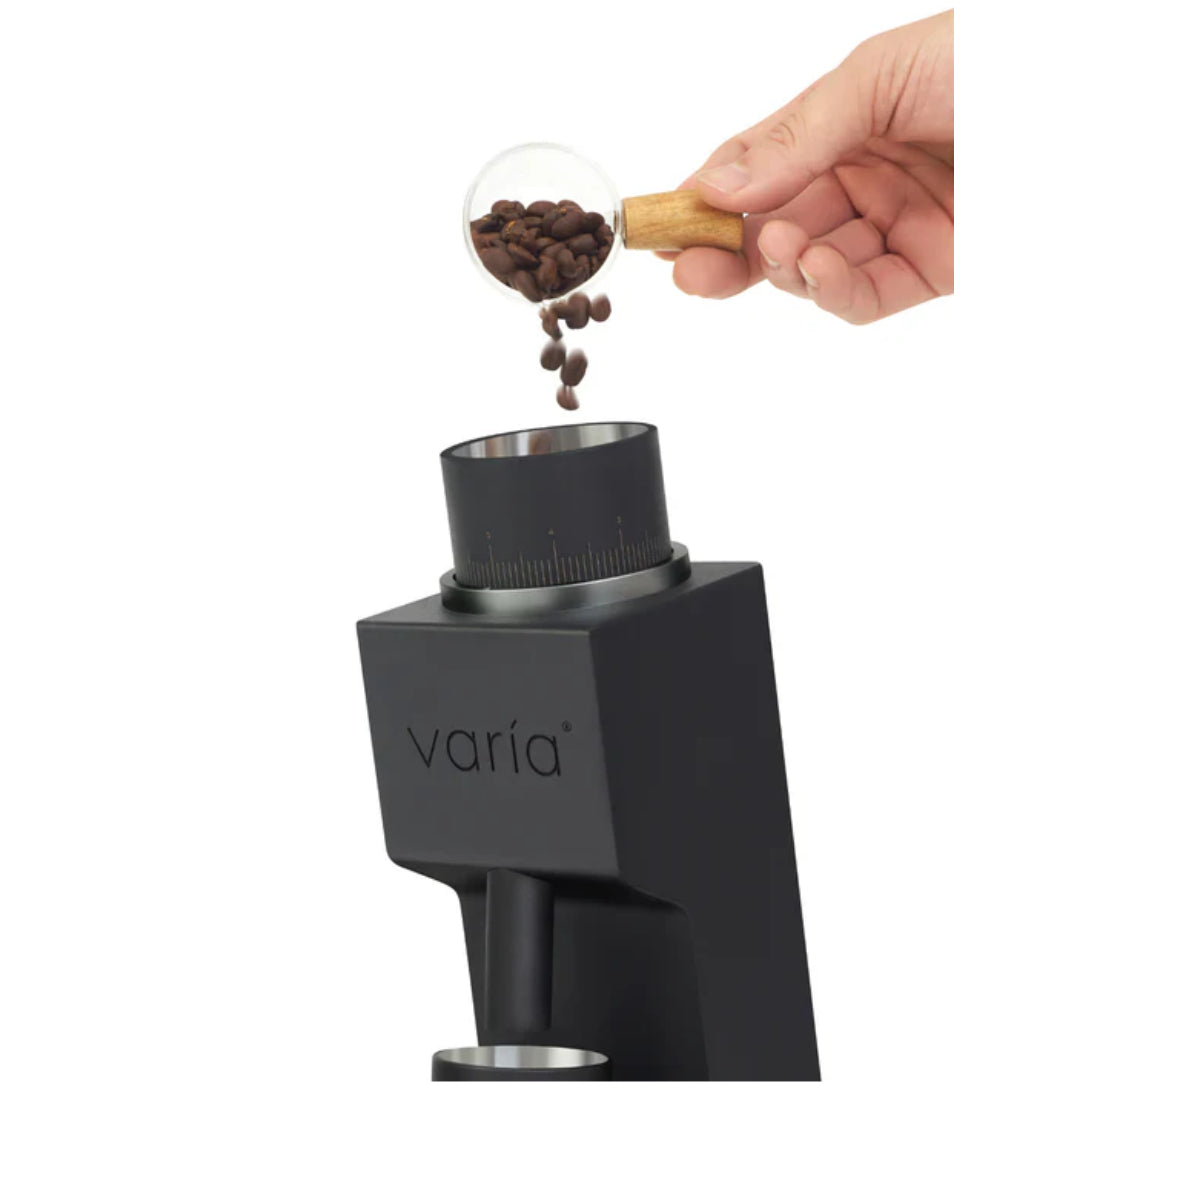 Varia VS3 Coffee Grinder 2nd Gen 120V (Black)